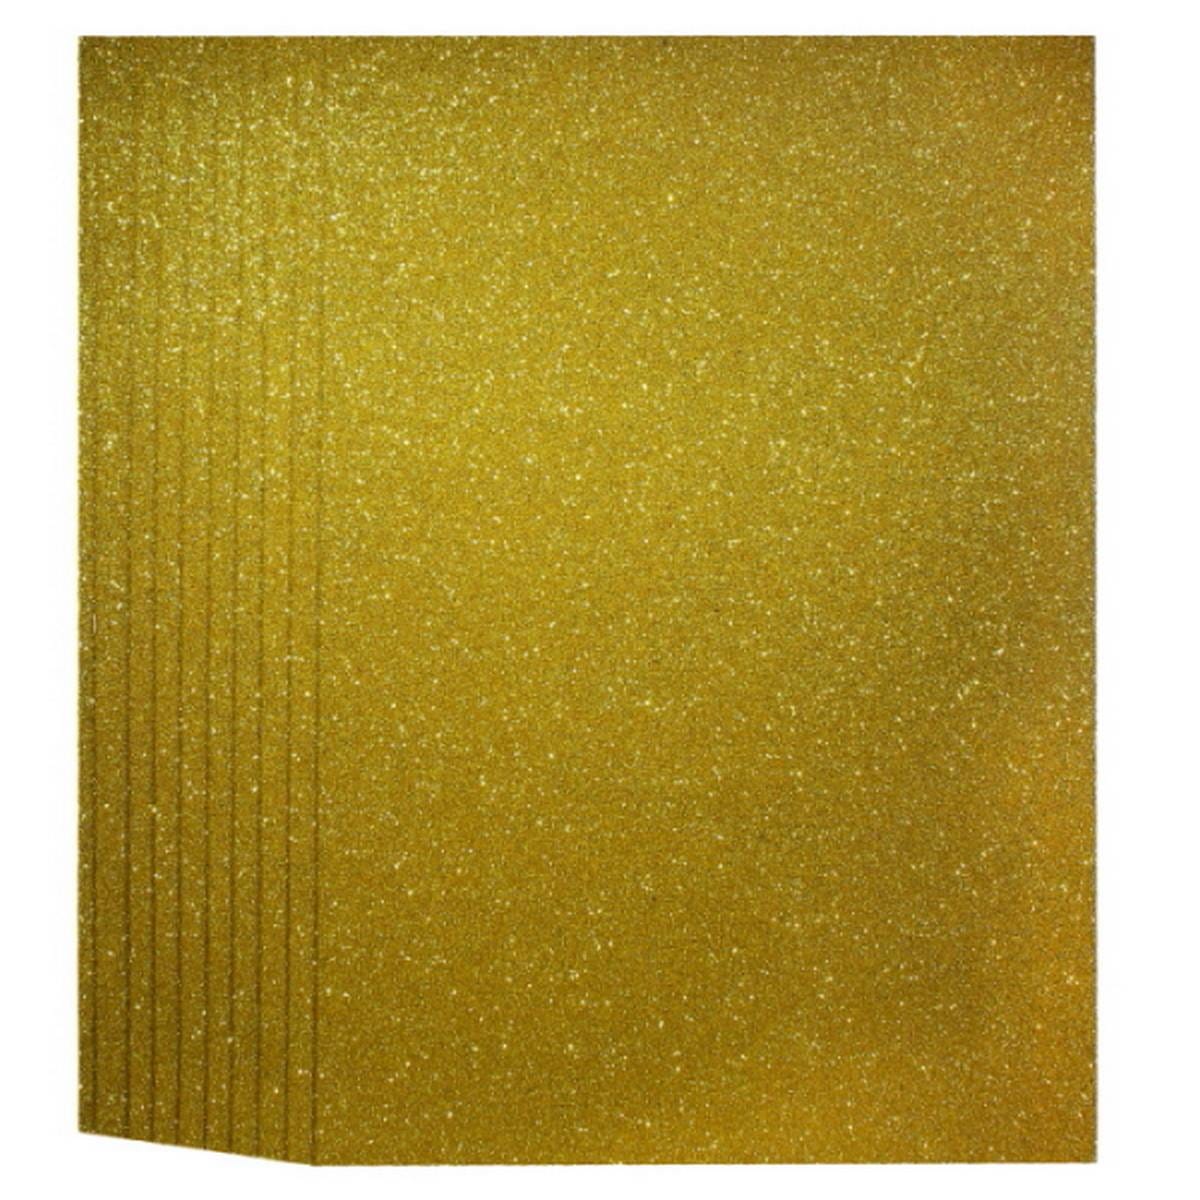 jags-mumbai Glitter Paper & Foam Sheet A4 Glitter Foam Sheet With Sticker Gold 26164GD